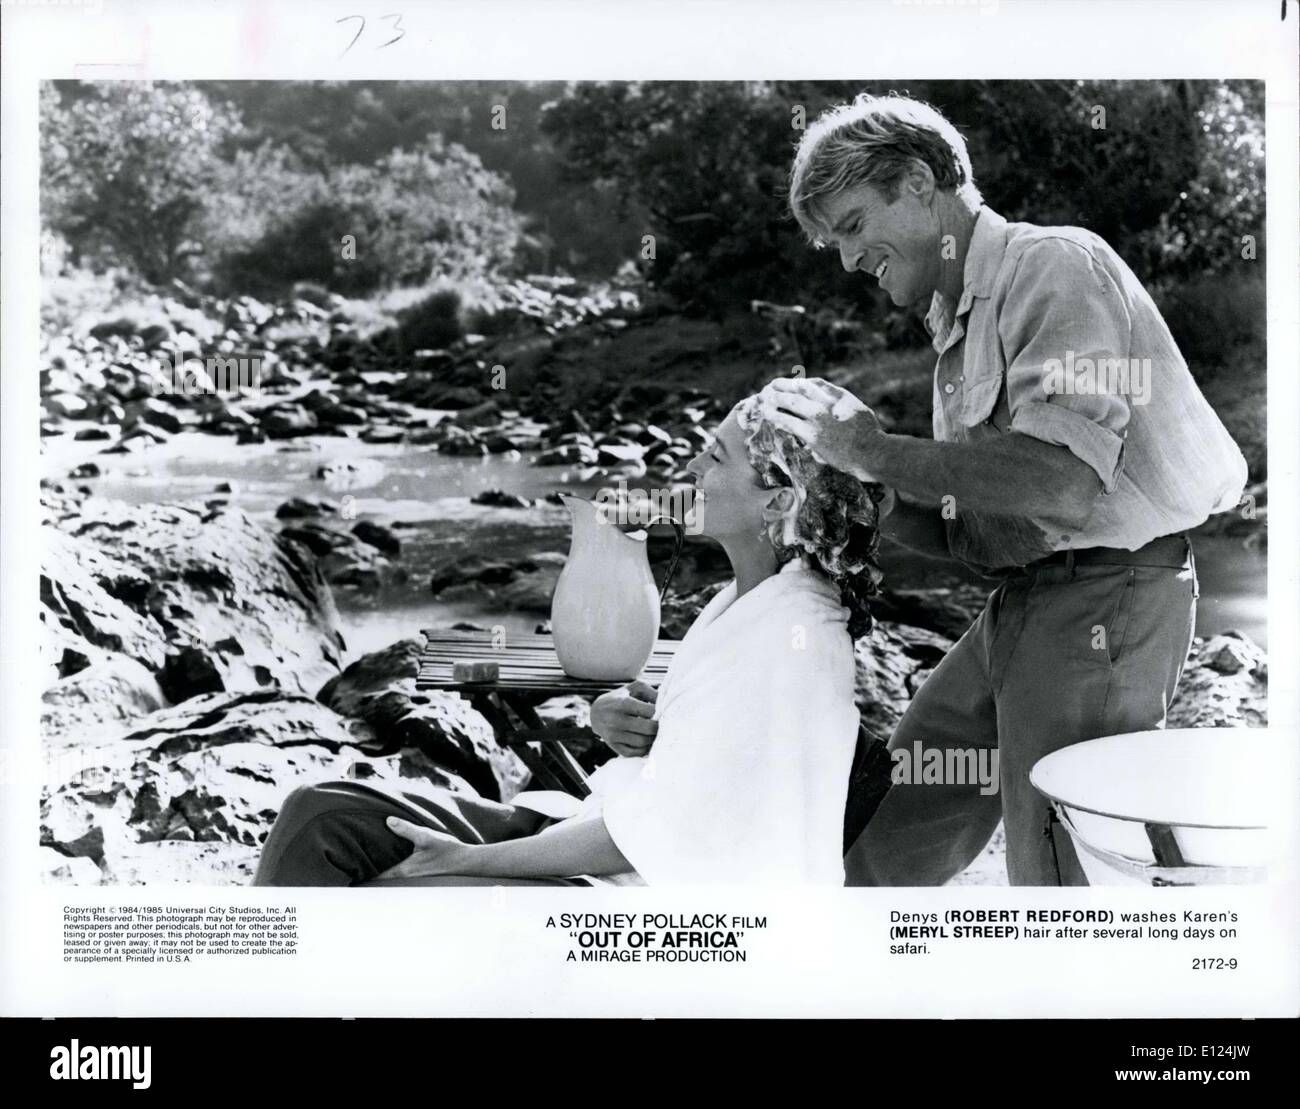 El 19 de diciembre de 1985 - Una película de Sydney Pollack ''Out Of Africa'', una producción de Mirage. Denys (Robert Redford) lavados de Karen (Meryl Streep) pelo largo después de varios días de safari. Foto de stock